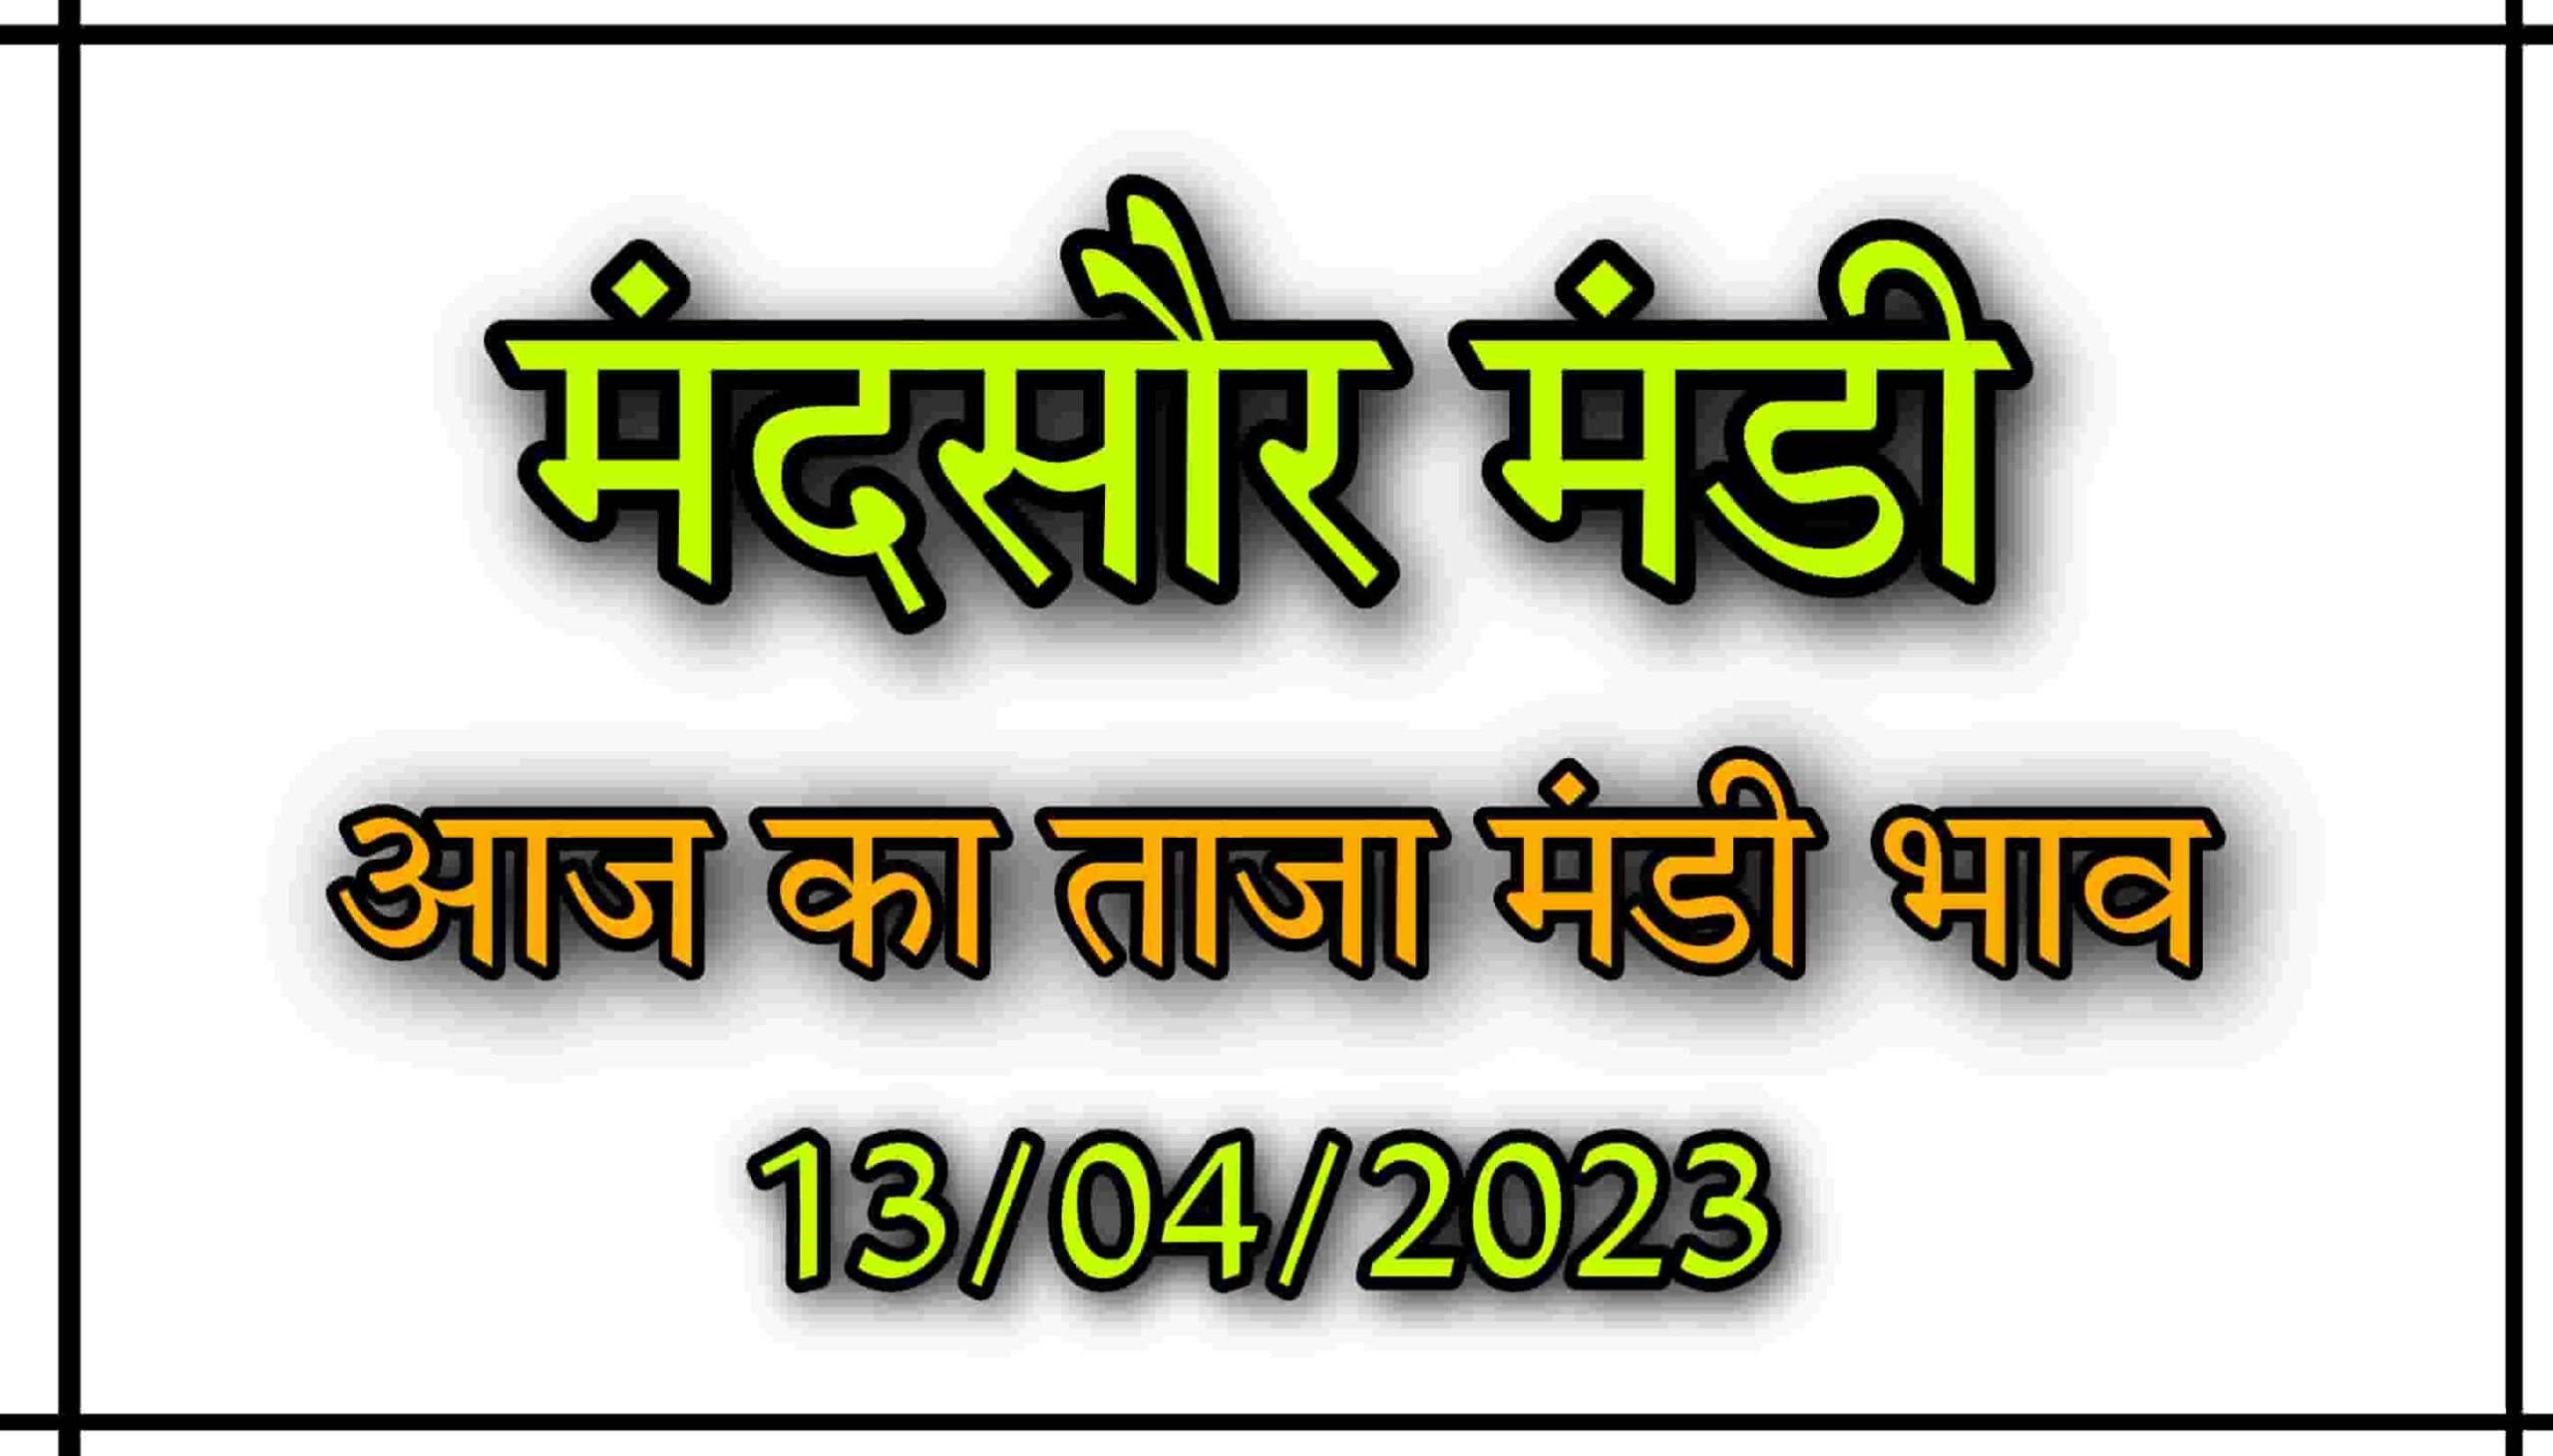 Mandsaur Mandi Bhav : आज का मन्दसौर मंडी भाव देखे सभी फसलों की भाव